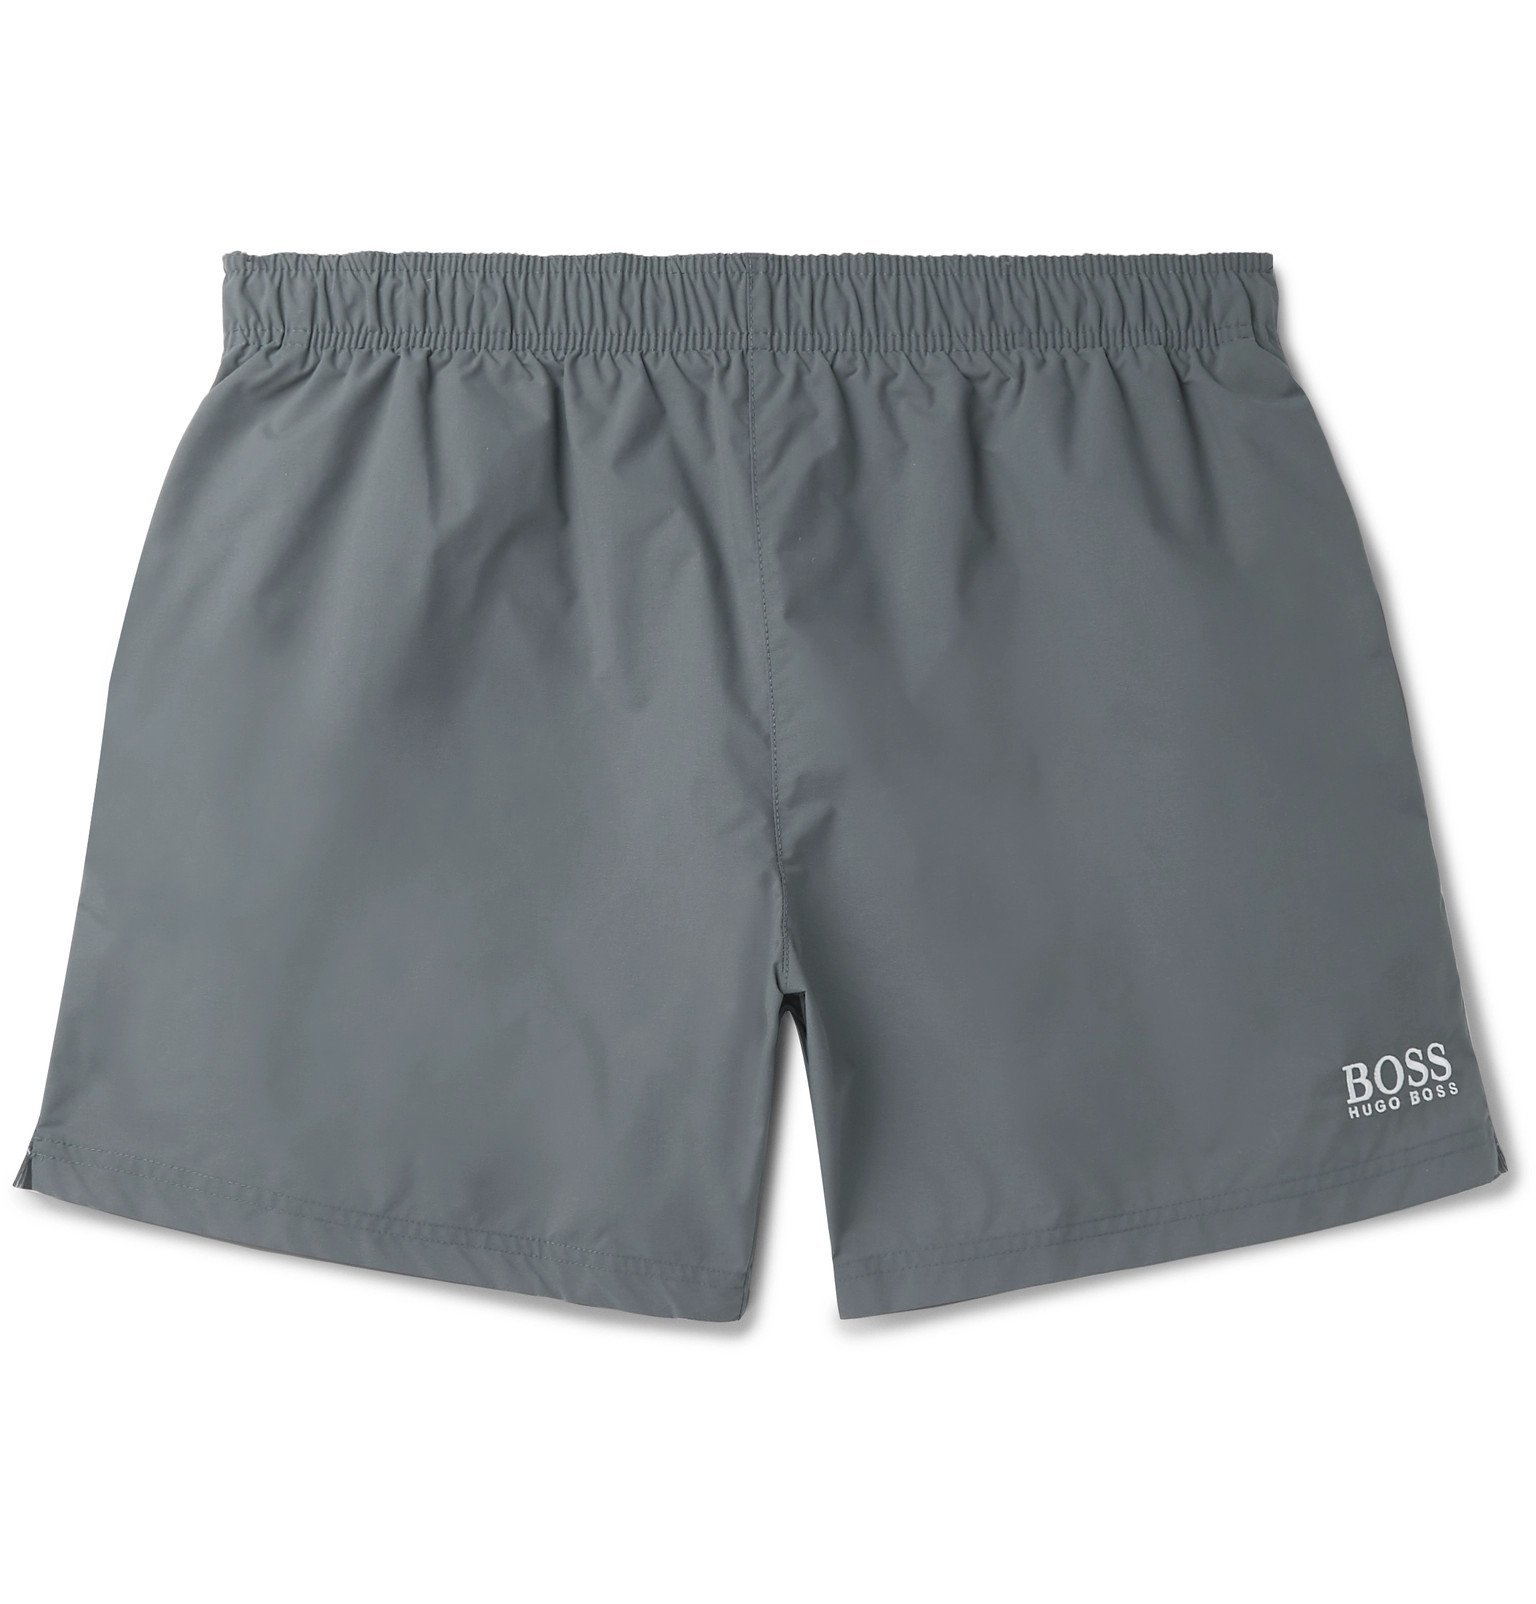 hugo boss grey swim shorts